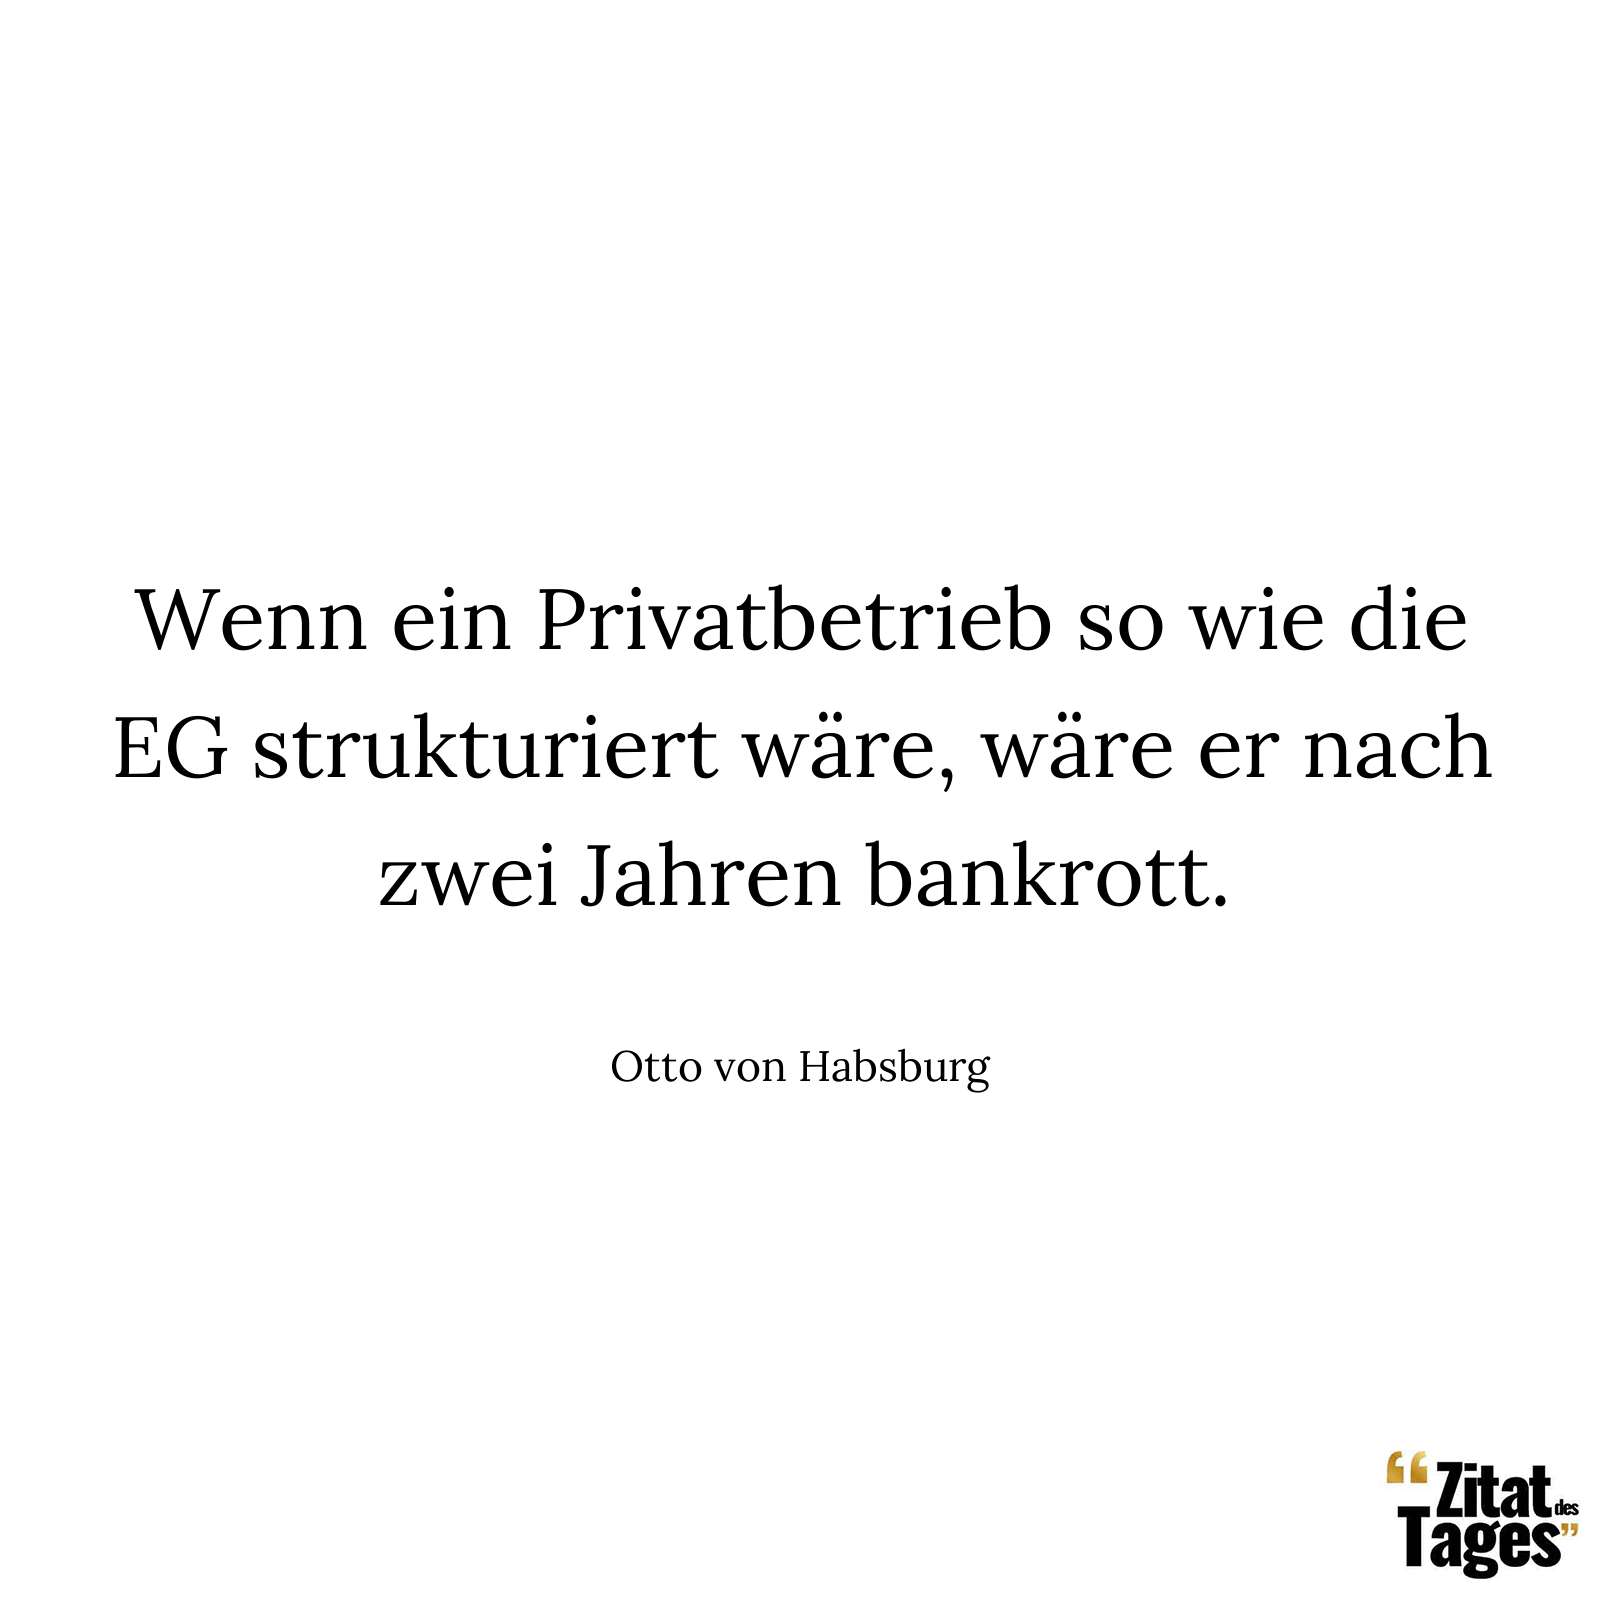 Wenn ein Privatbetrieb so wie die EG strukturiert wäre, wäre er nach zwei Jahren bankrott. - Otto von Habsburg